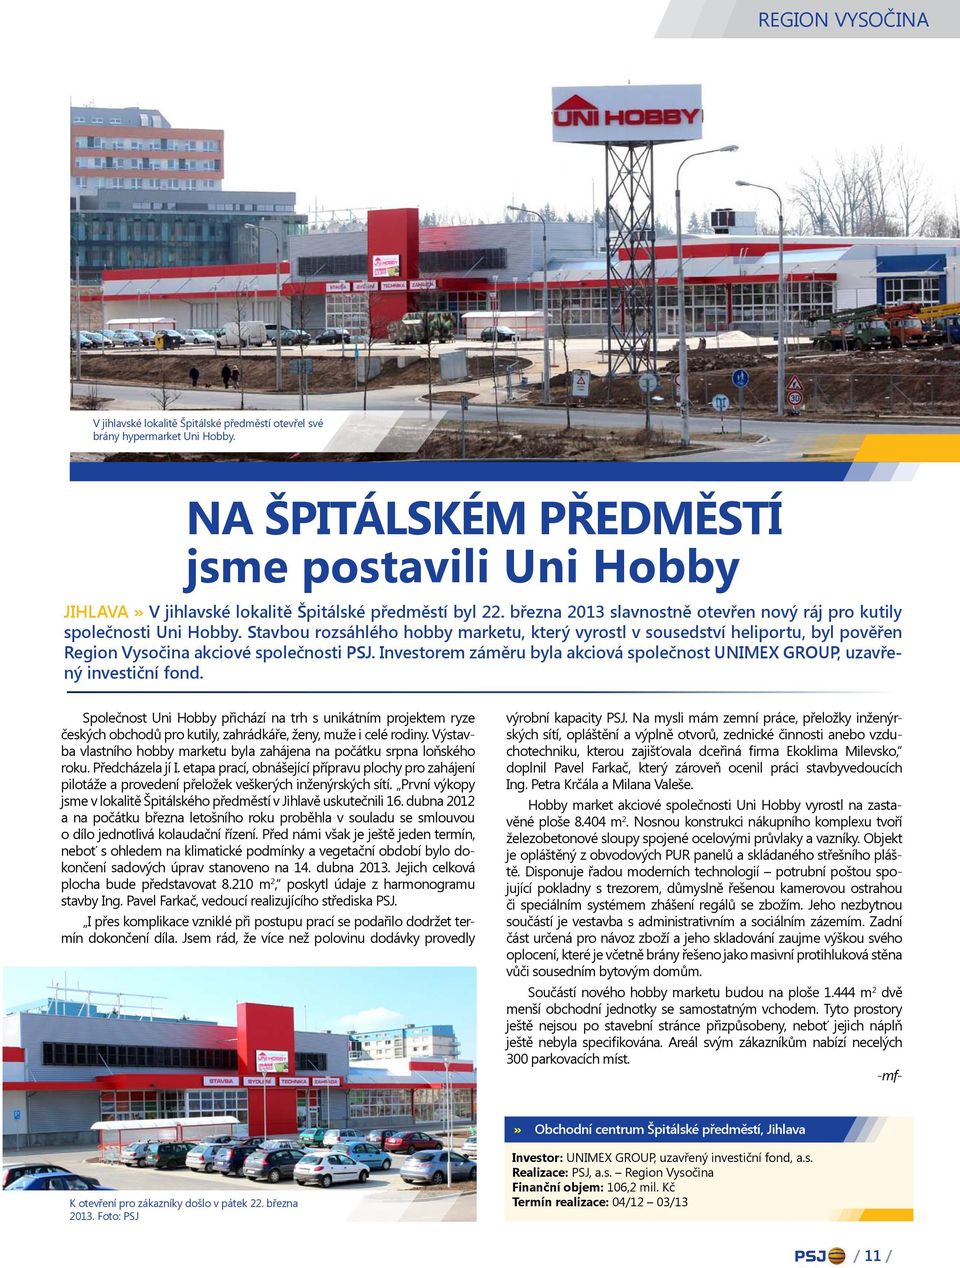 Stavbou rozsáhlého hobby marketu, který vyrostl v sousedství heliportu, byl pověřen Region Vysočina akciové společnosti PSJ.